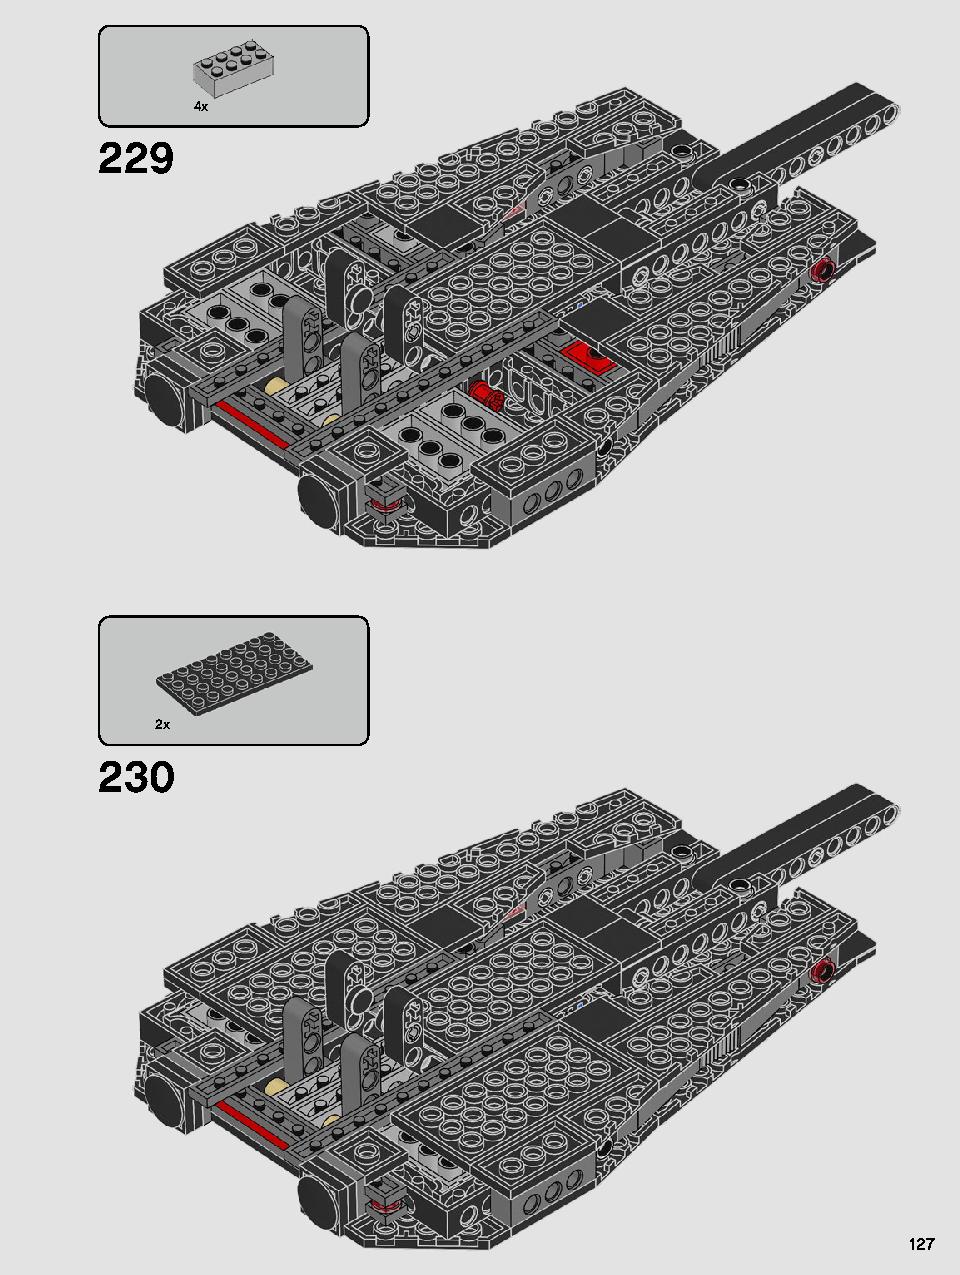 스타워즈 카일로 렌의 셔틀™ 75256 레고 세트 제품정보 레고 조립설명서 127 page